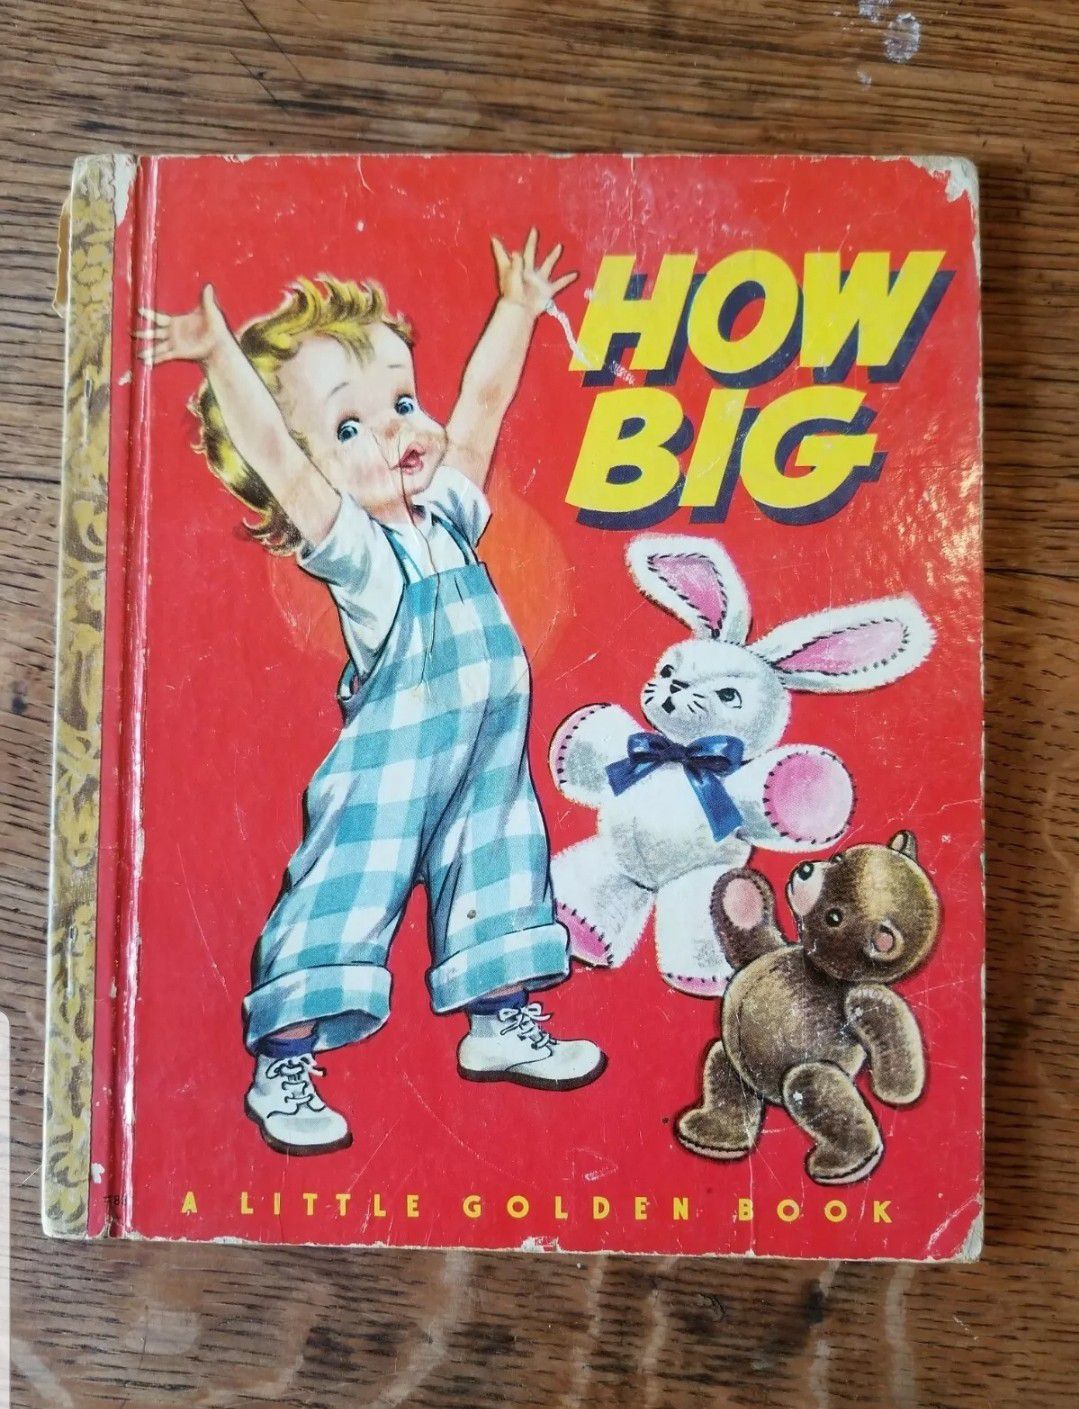 Little Golden Book #83 "How Big" 1949